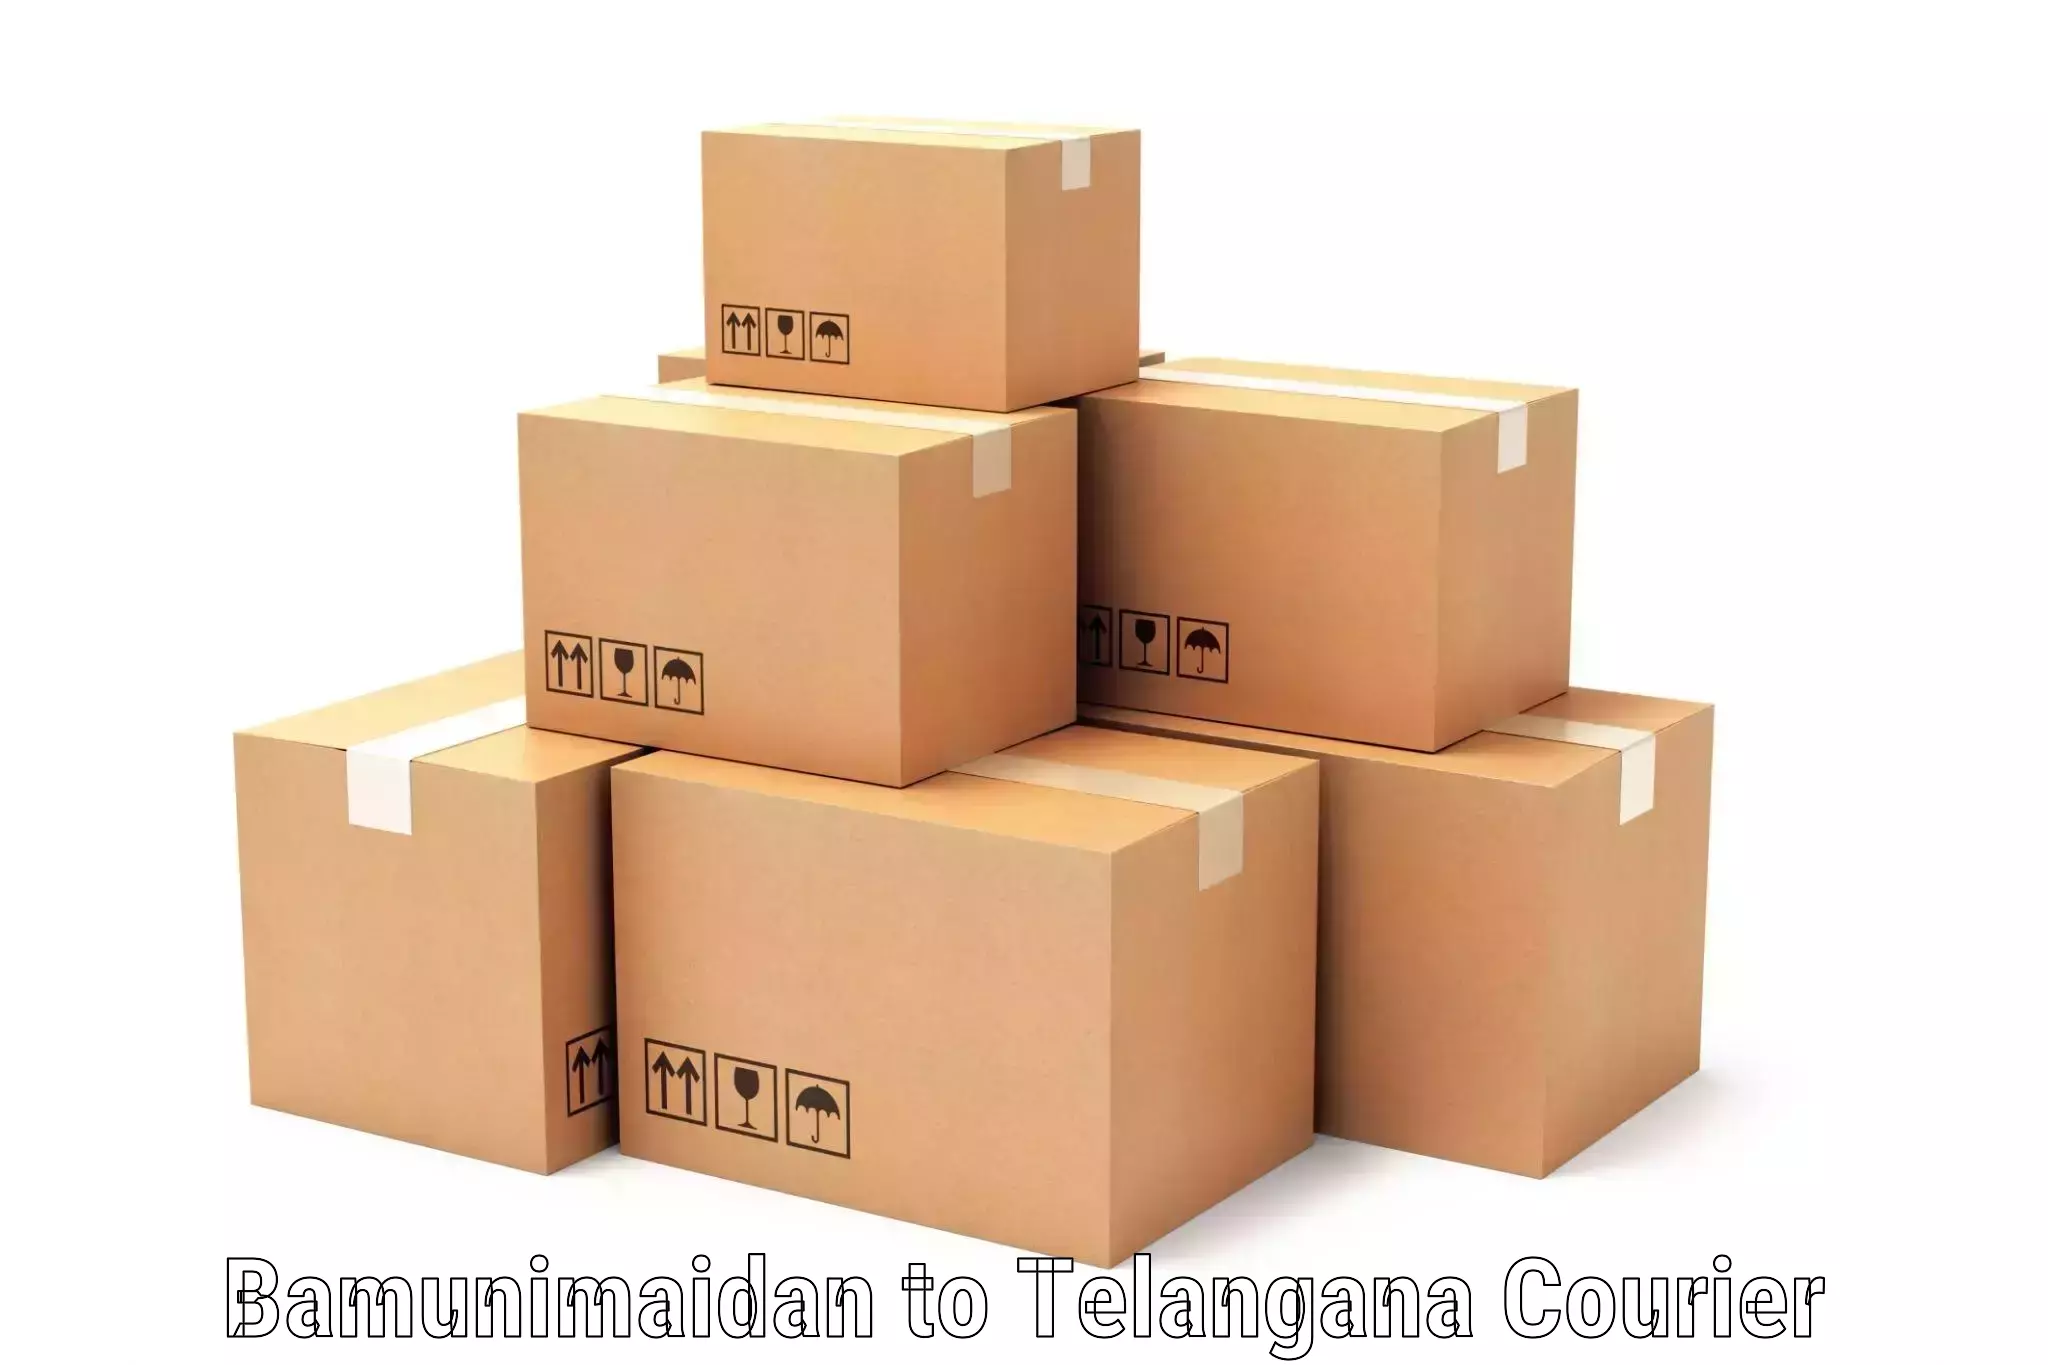 Package consolidation Bamunimaidan to Madgulapally